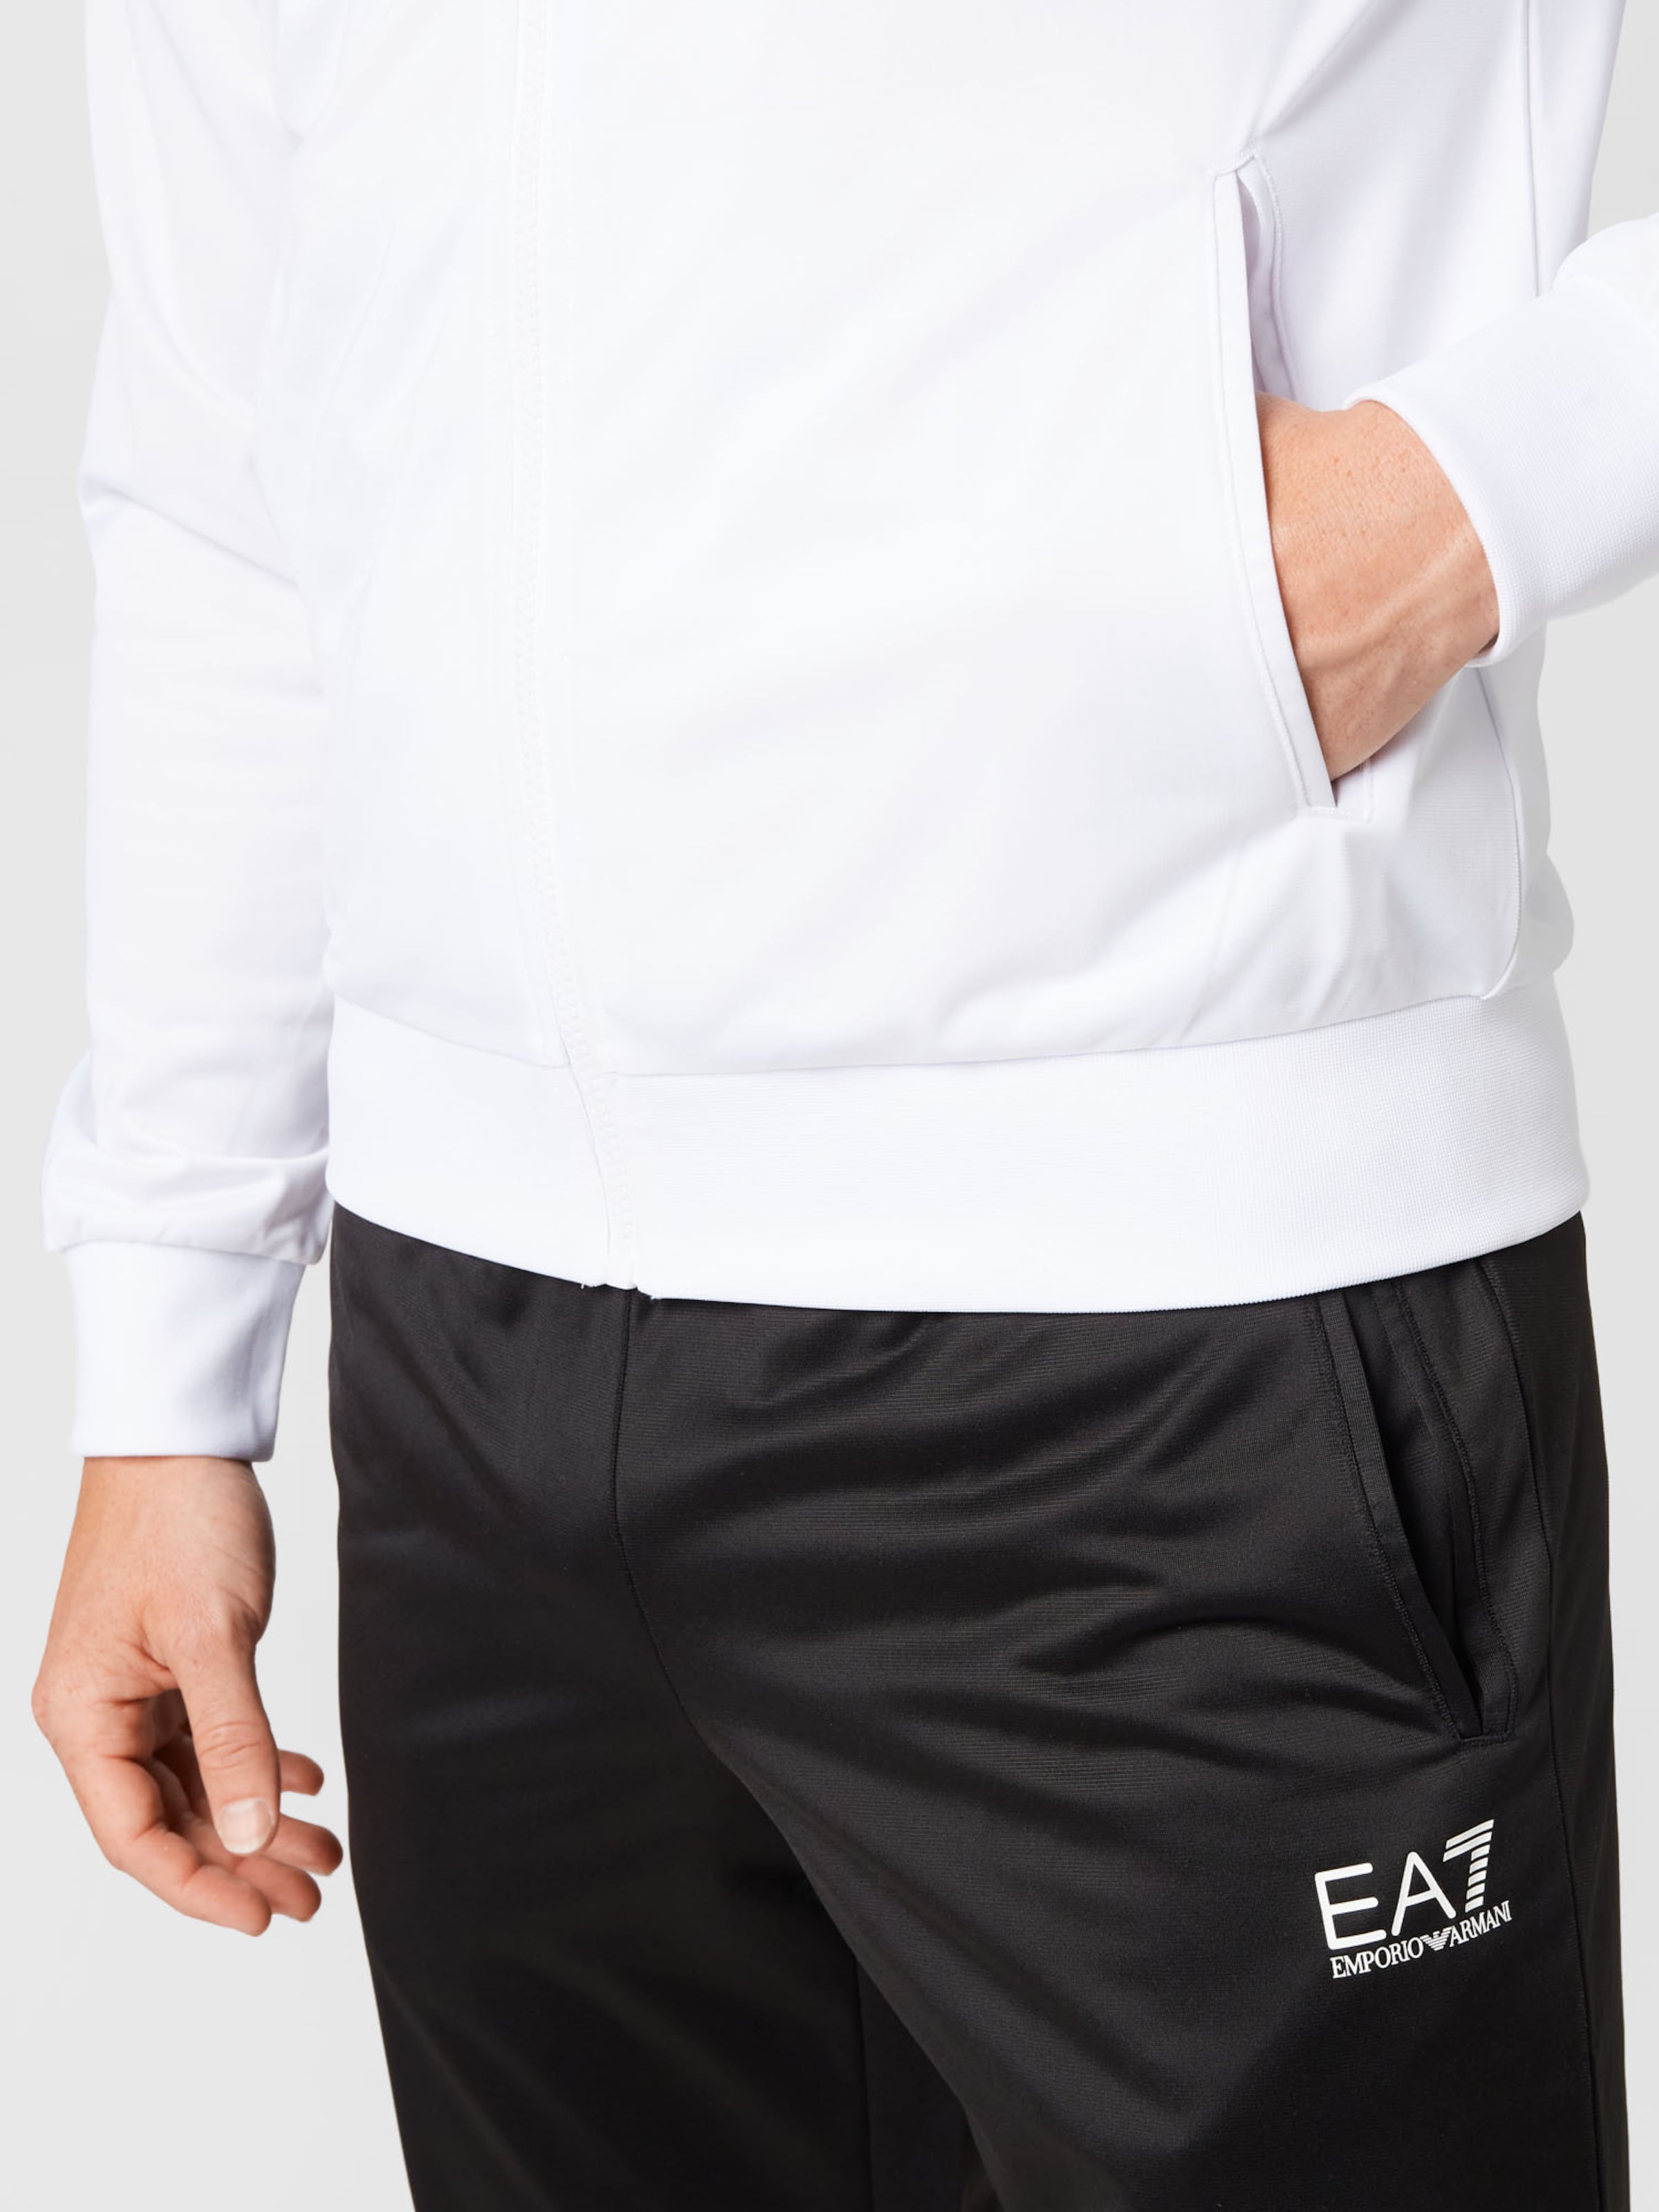 Aarde repetitie Ik heb het erkend EA7 Emporio Armani Joggingpak in Zwart, Wit | ABOUT YOU